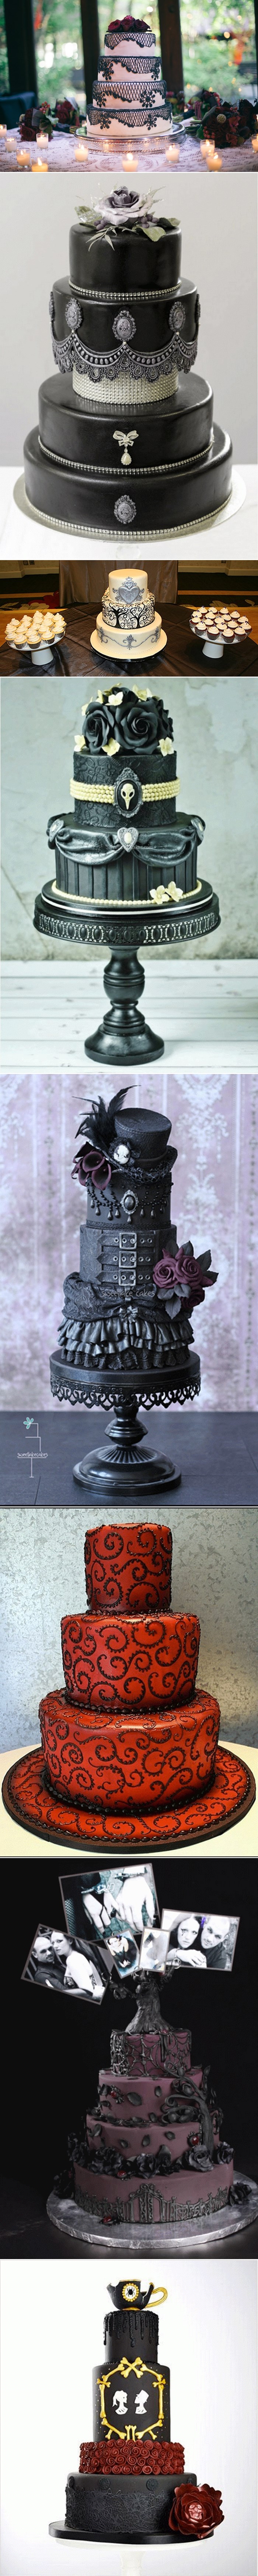 GALERIJA: Fantastične gotikom inspirirane torte